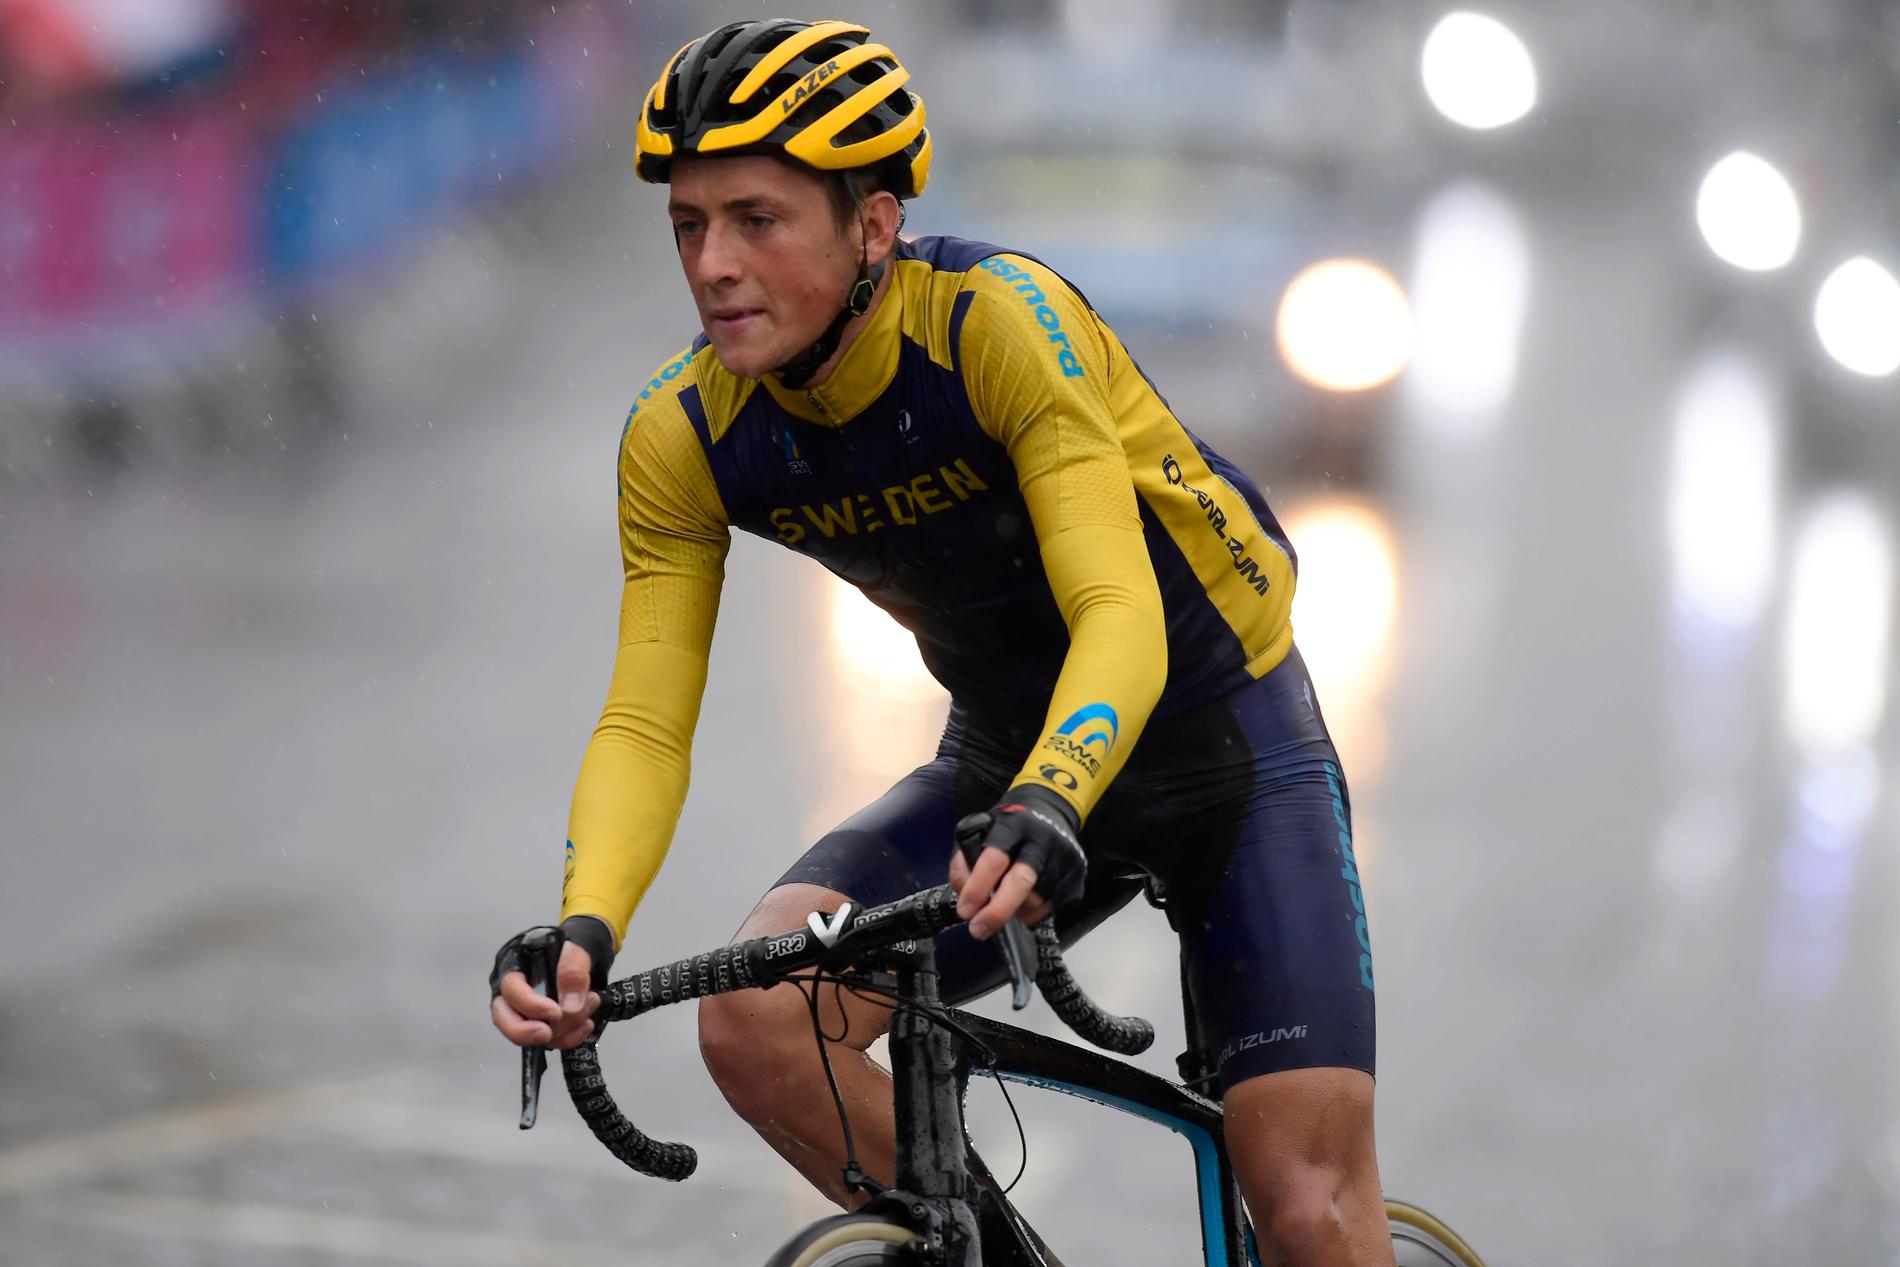 Cyklisten Lucas Eriksson fick hjärtmuskelinflammation i samband med ett lopp